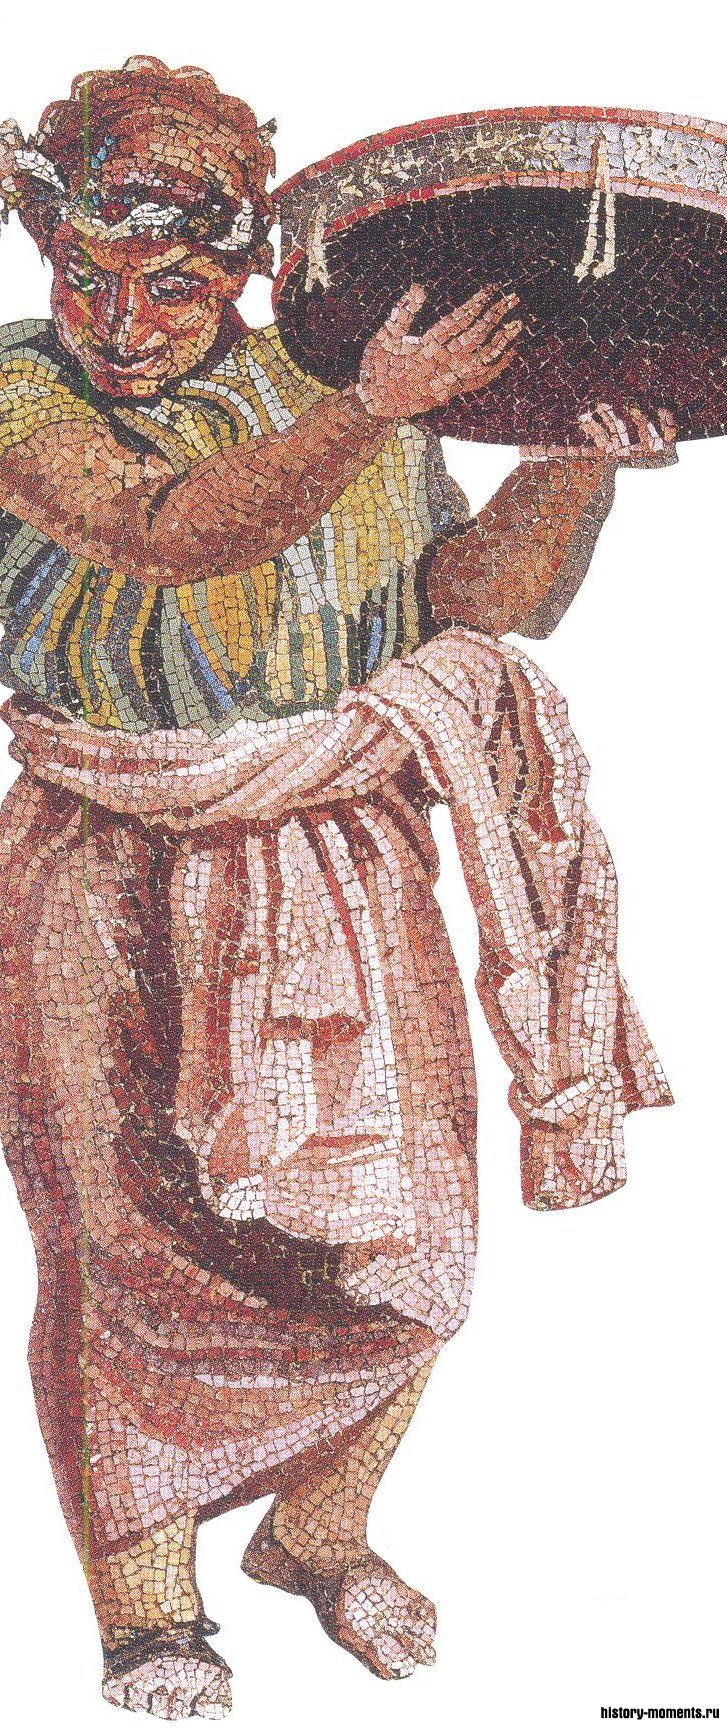 Мозаика изображает музыканта, бьющего в тамбурин.